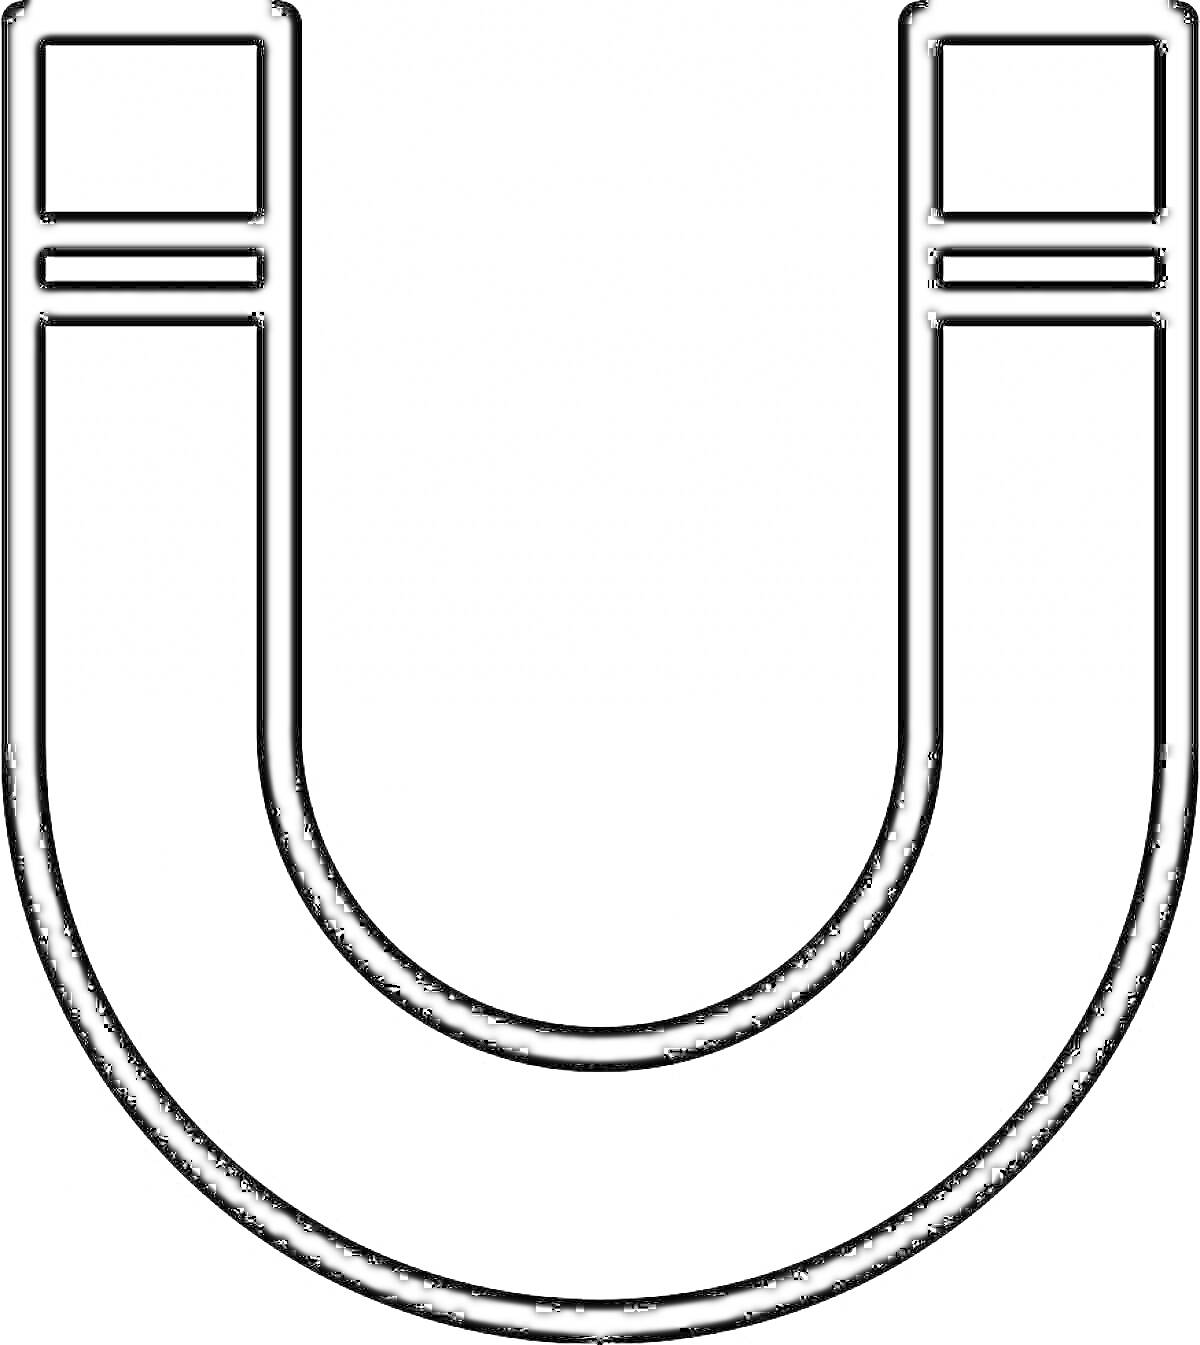 Раскраска U-образный магнит с линиями на концах